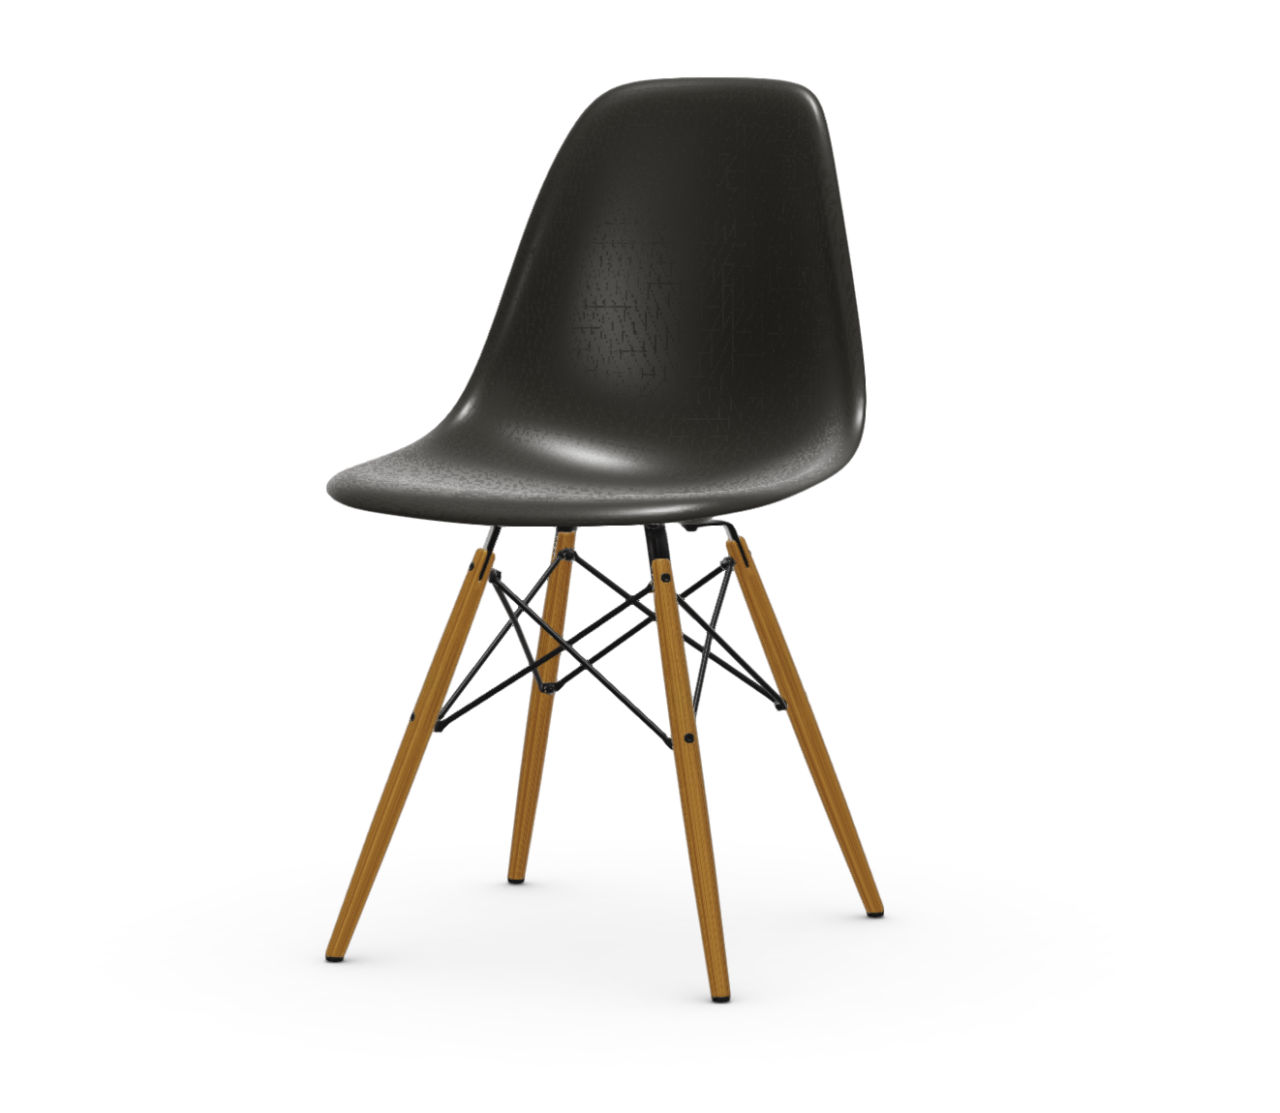 Questa foto rappresenta la DSW di Vitra, una sedia di design unica e all'avangardia, proposto nella selezione Peverelli